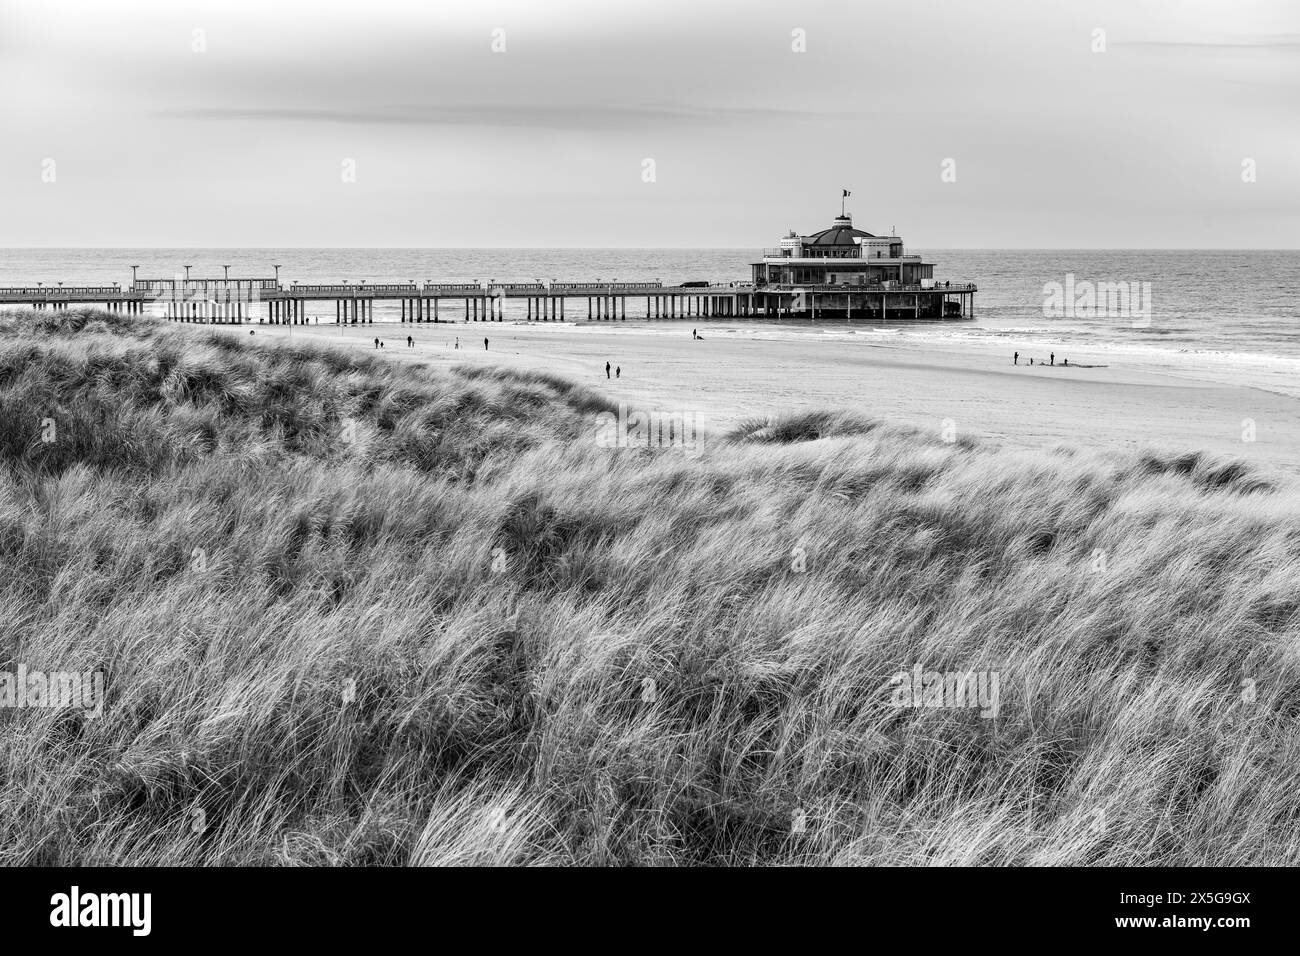 Blankenberge Pier mit Strand und Nordsee von Sanddünen in schwarz-weiß, Westflandern, Belgien. Stockfoto